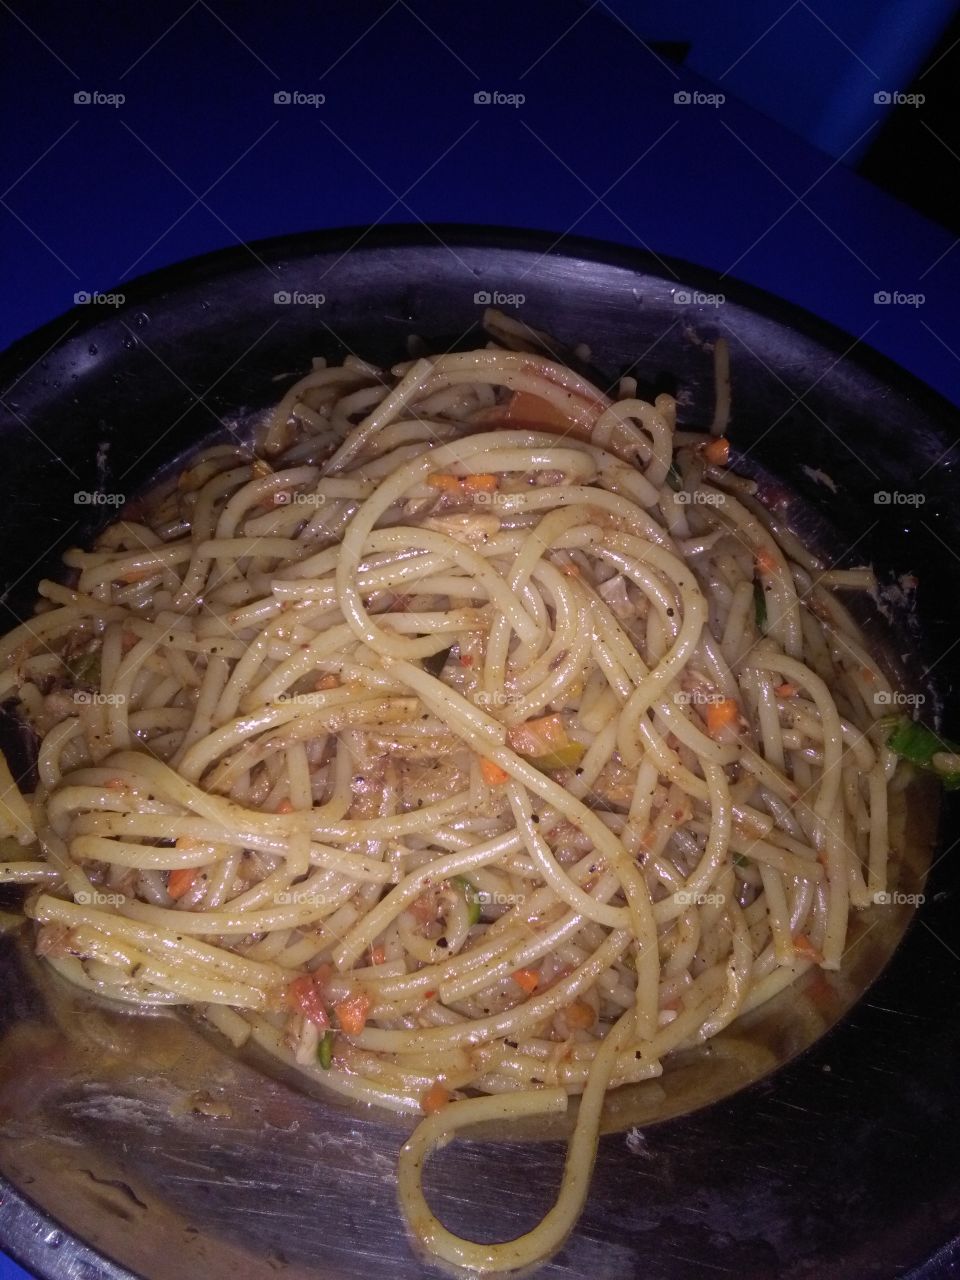 Tuna with spaghetti